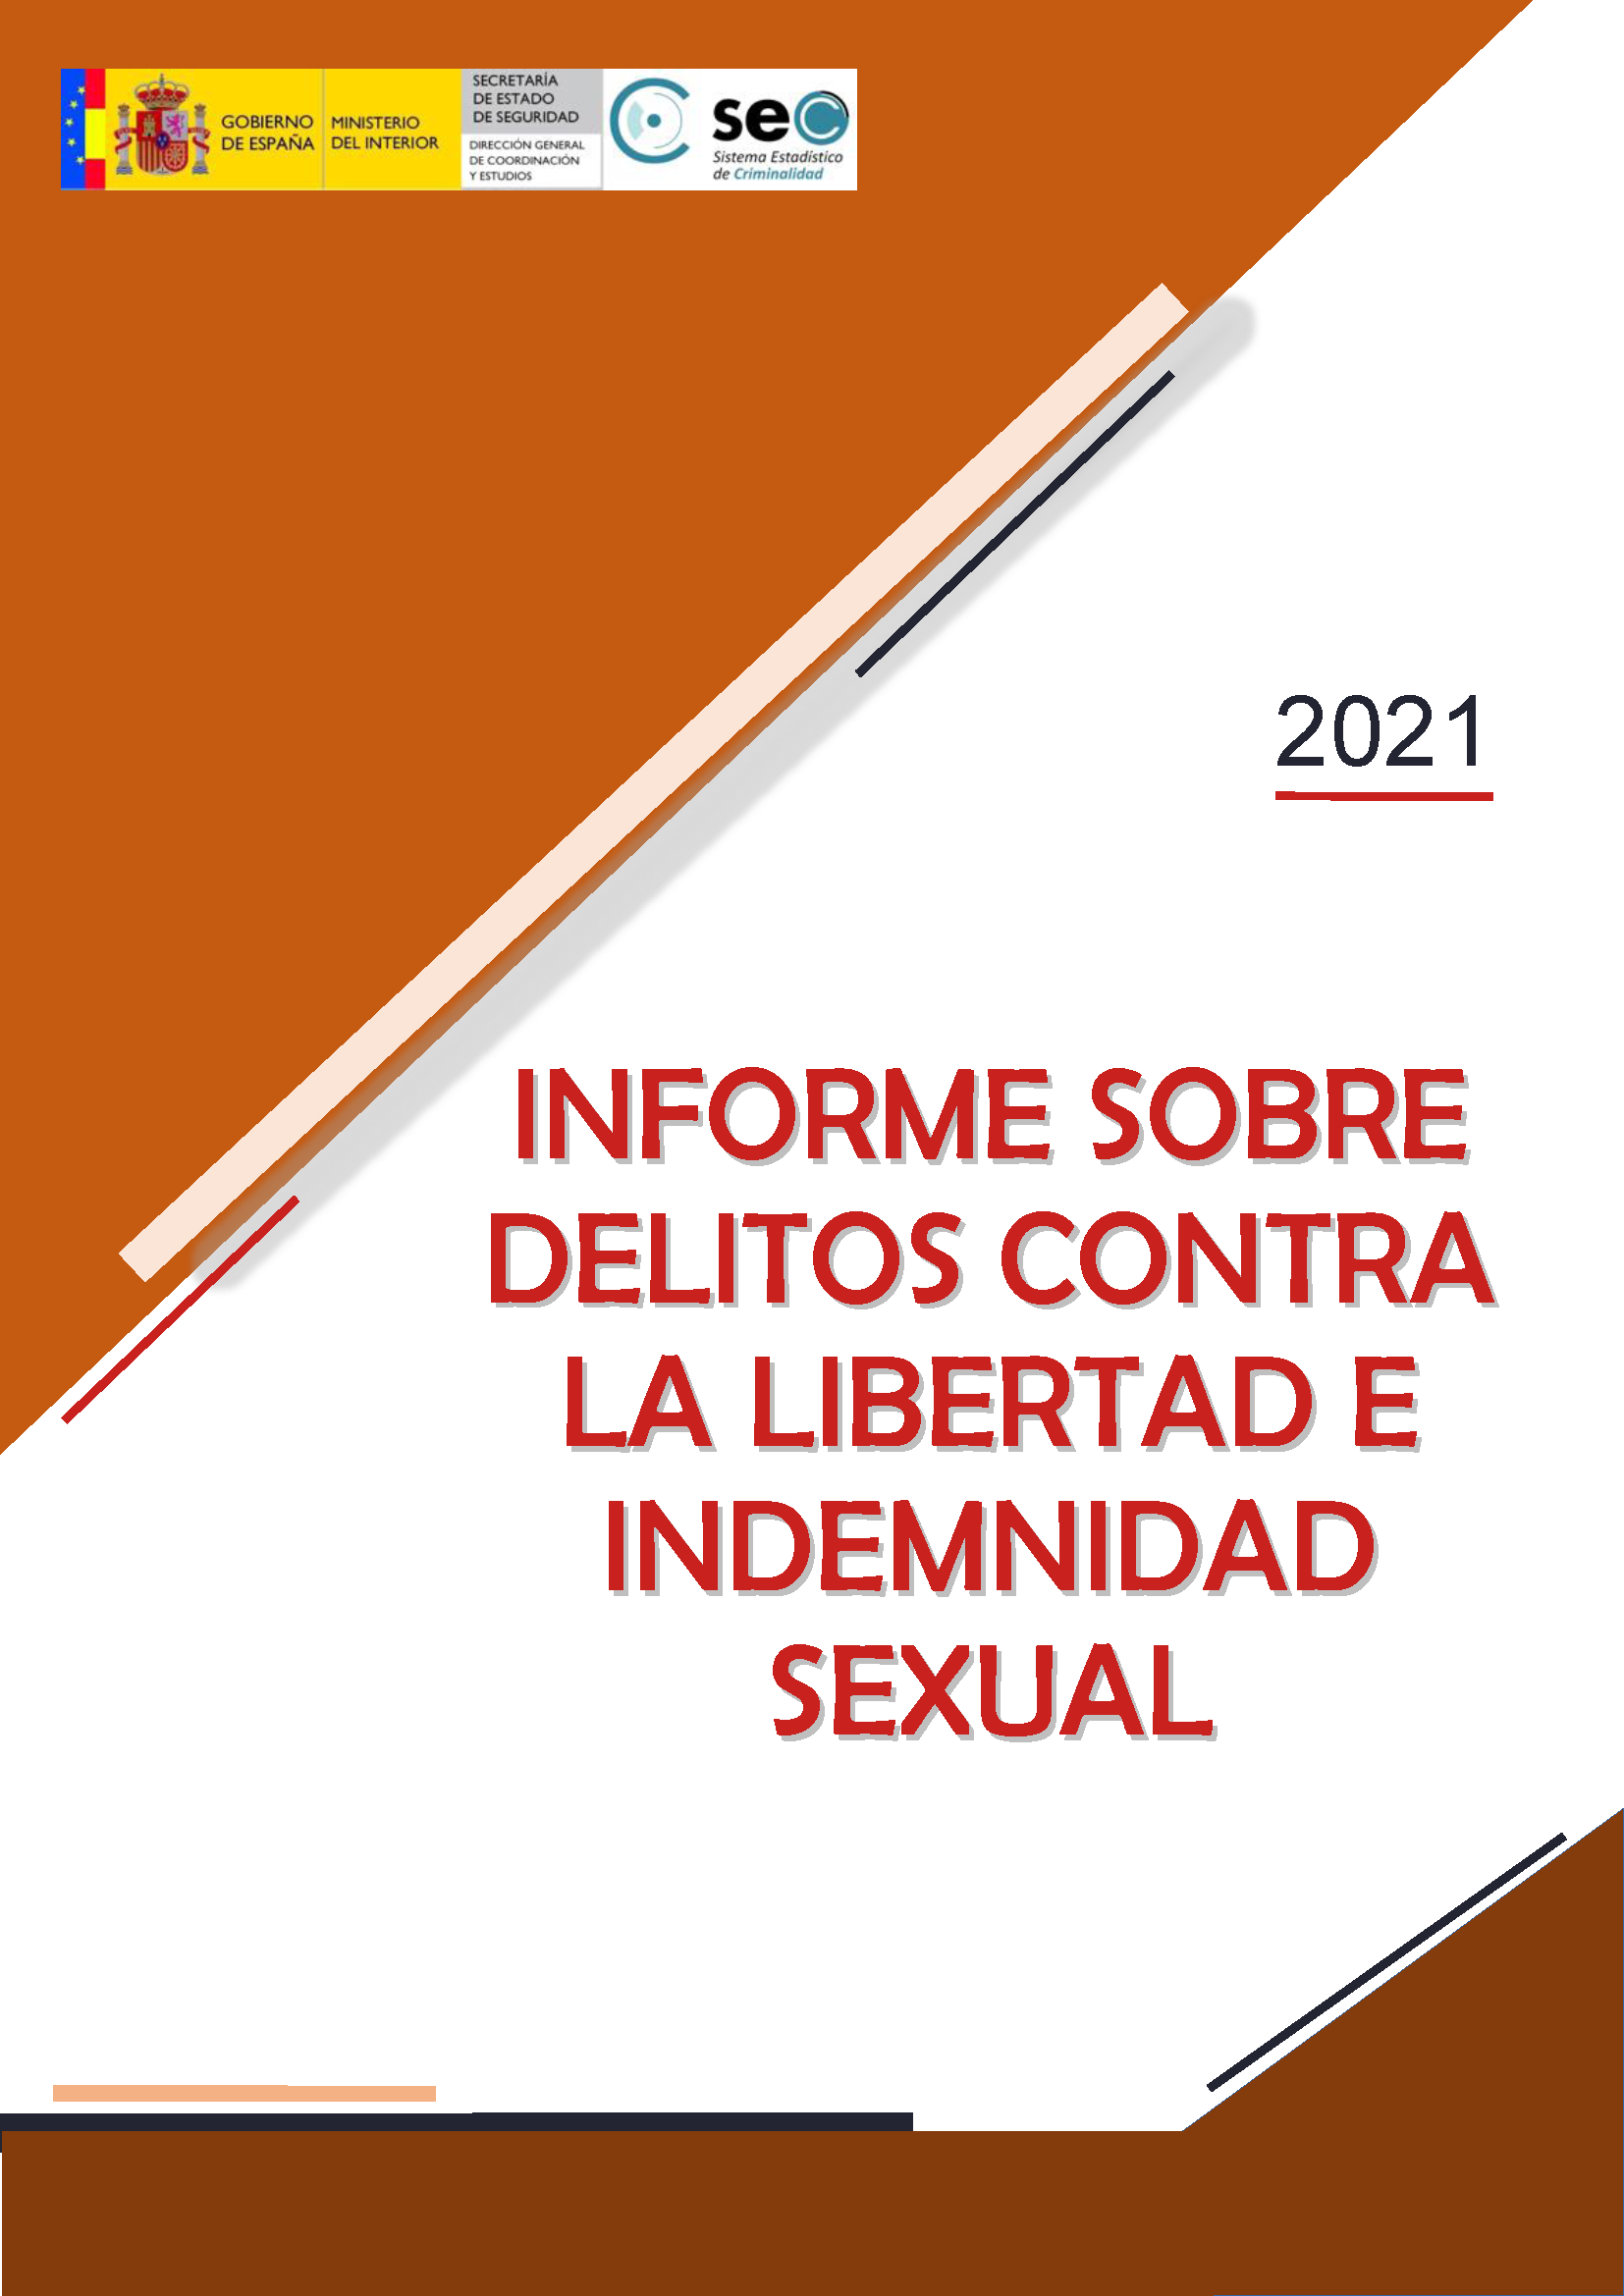 Informe delitos contra la libertad e indemnidad sexual 2021